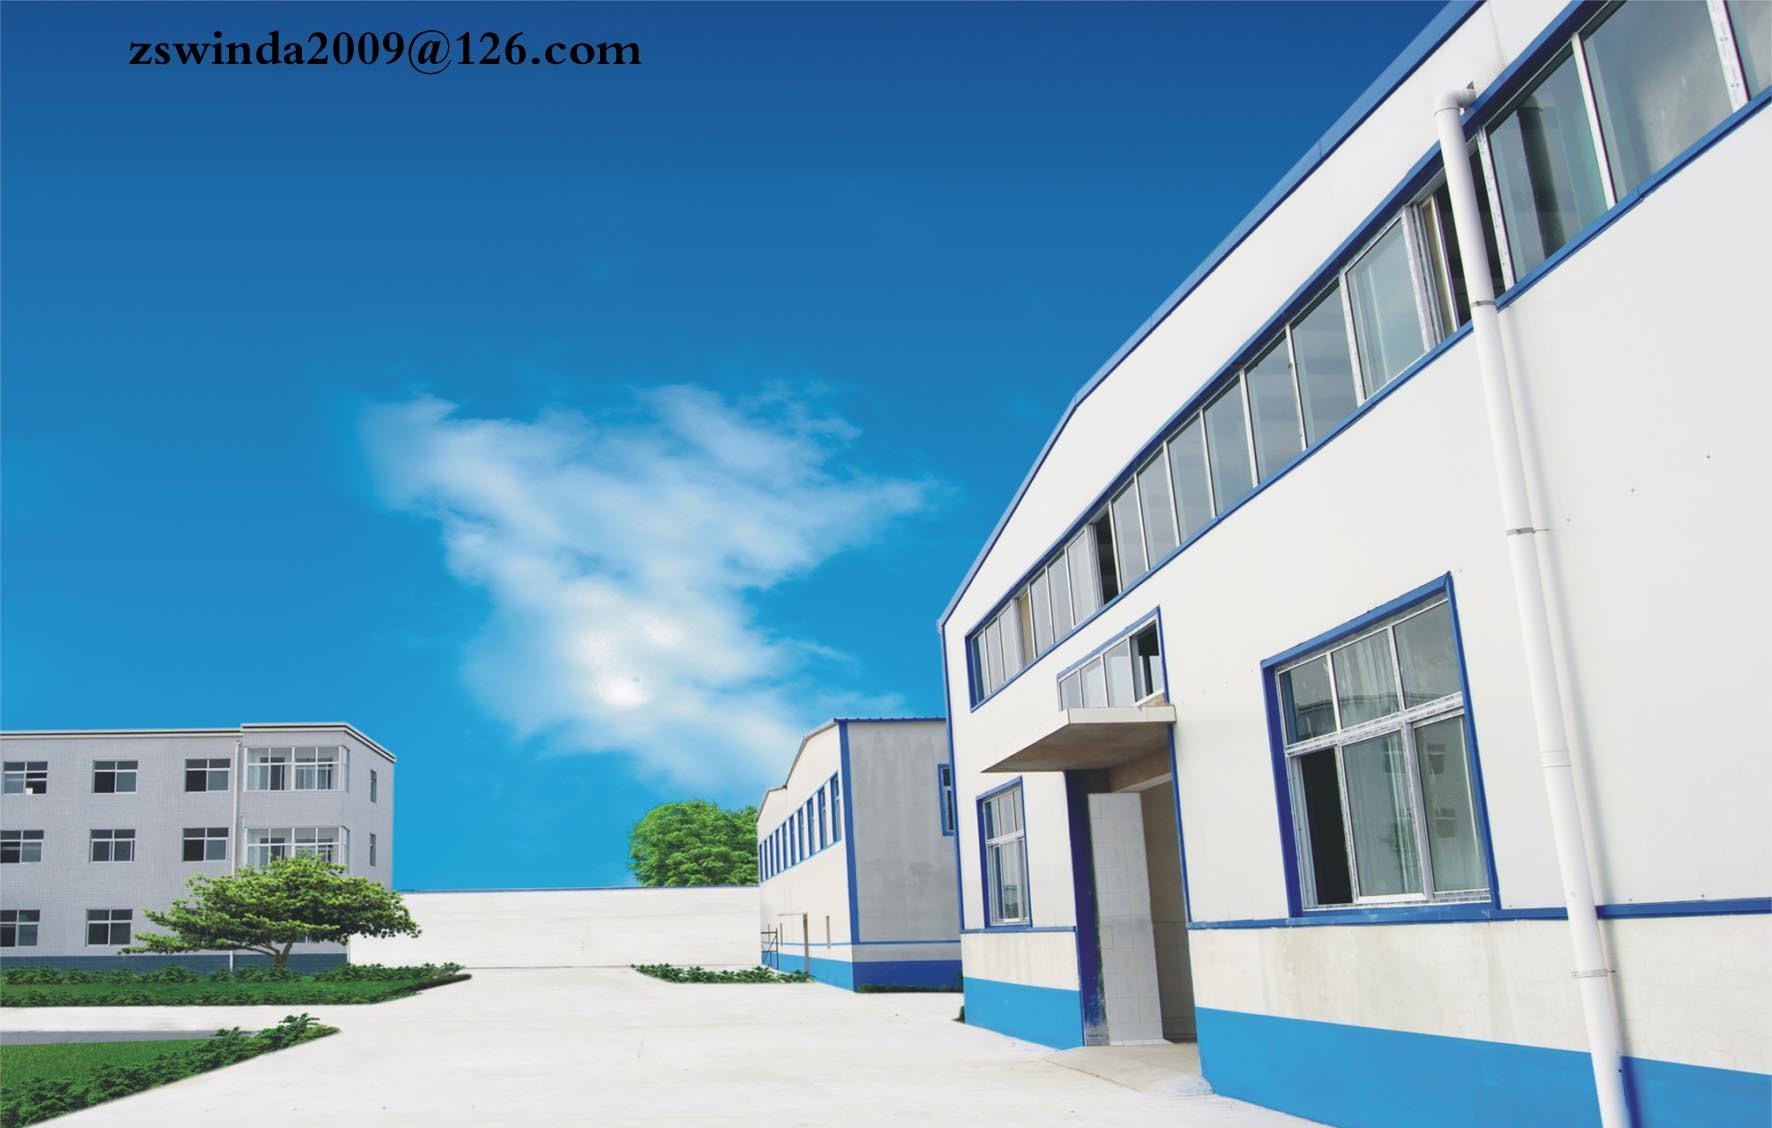 Zhongshan HanRui Electronic Factory